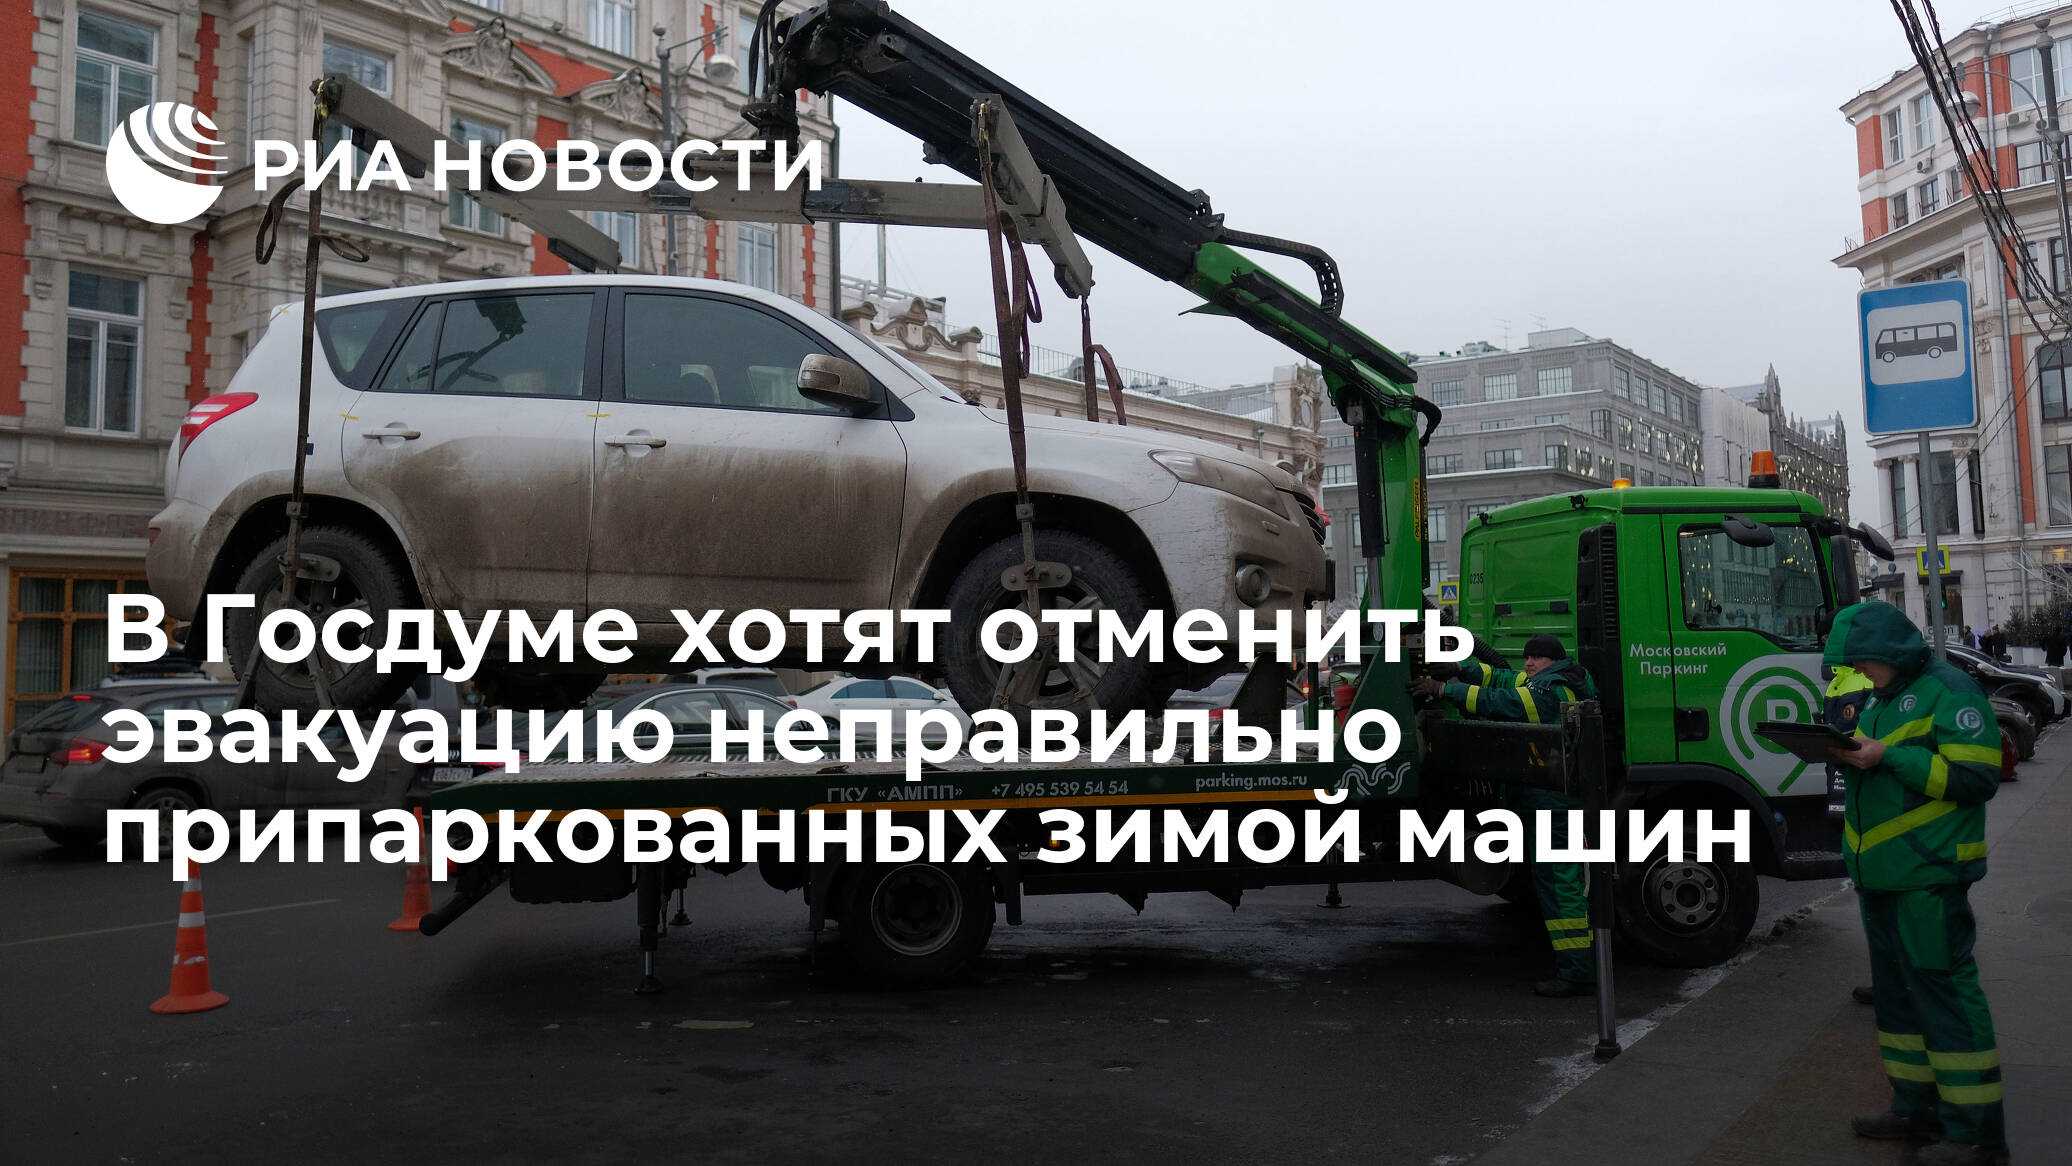 Эвакуировали машину в москве: куда звонить, как узнать и что делать?